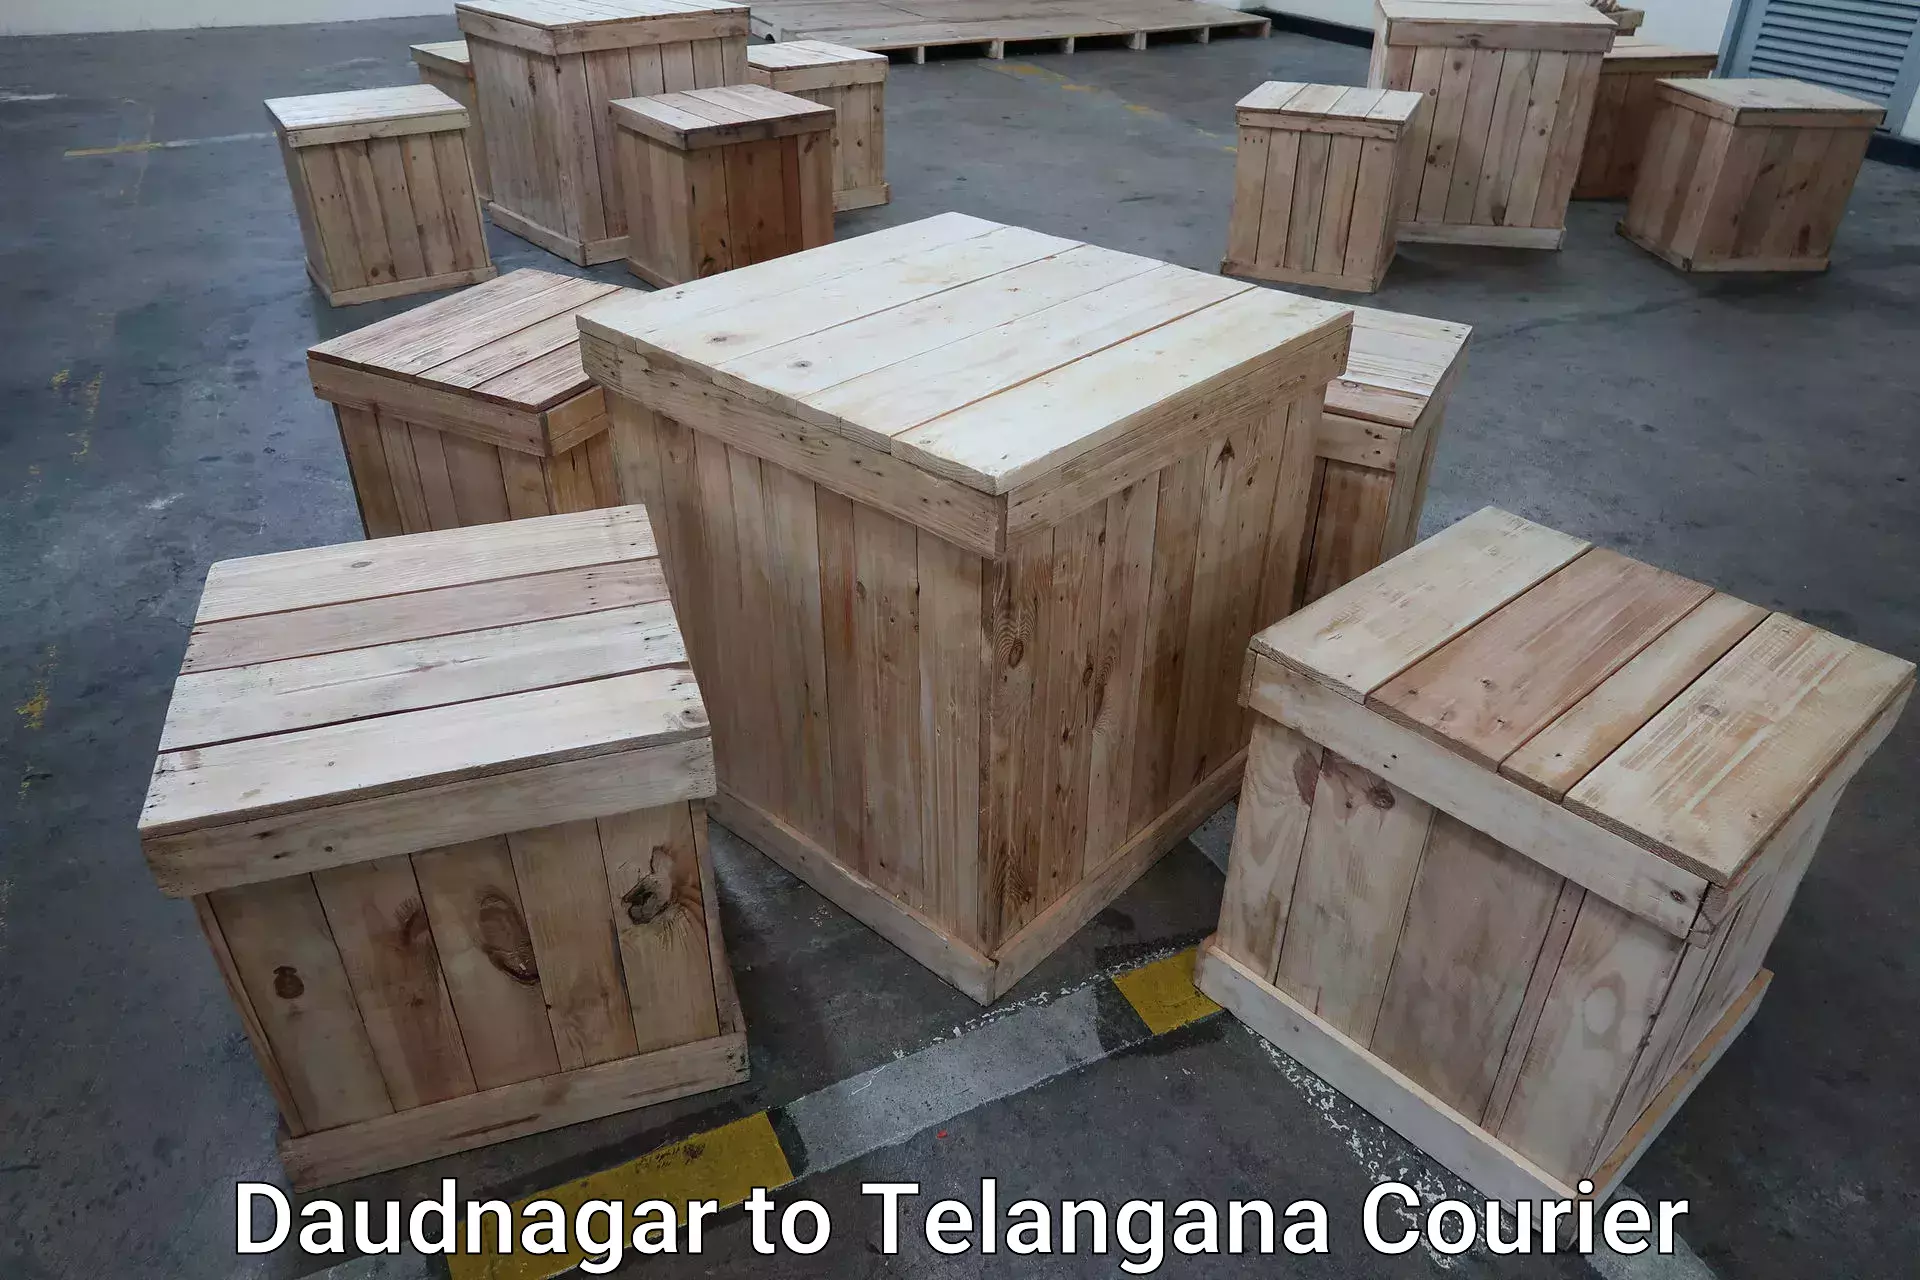 Baggage transport innovation Daudnagar to Tallada